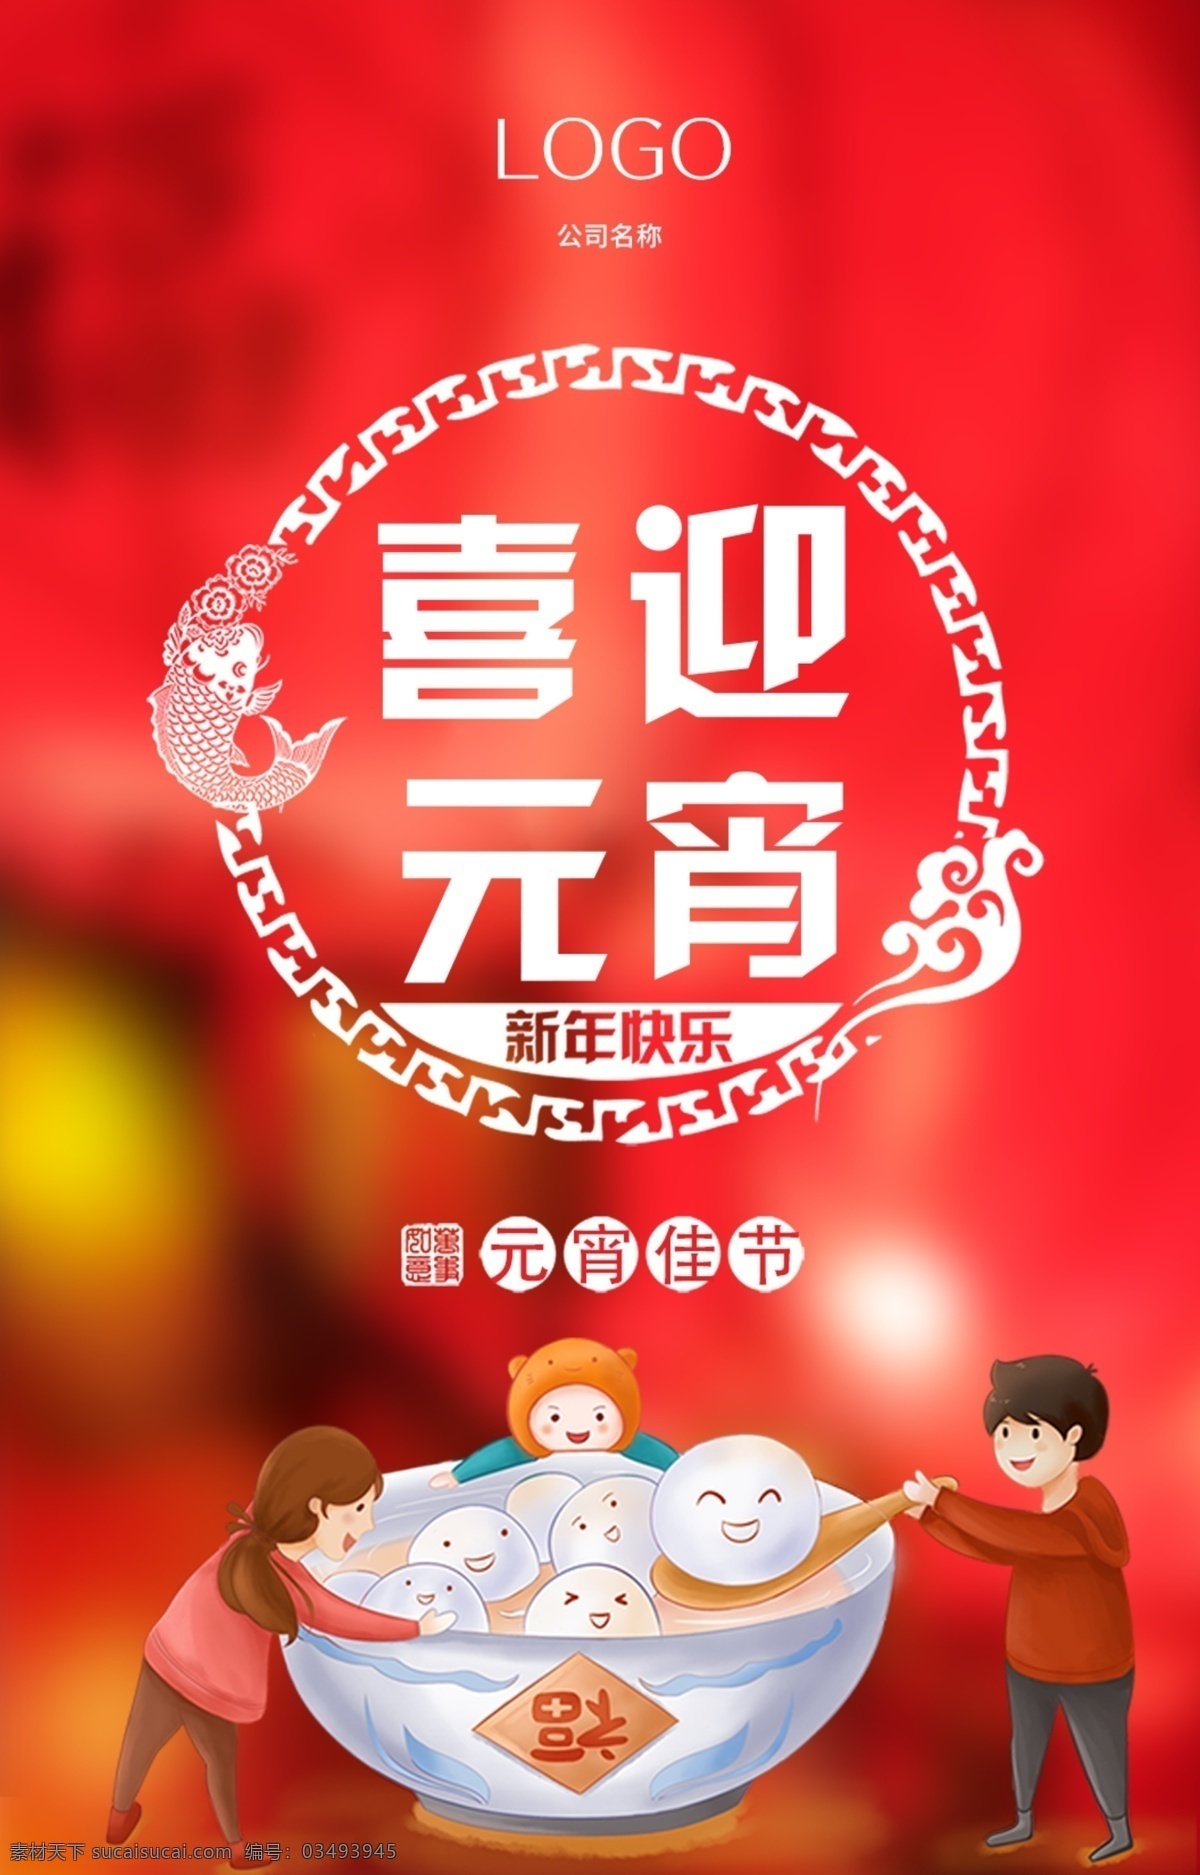 元宵 宣传 h5 海报 节日 元宵节 新年快乐 微信 元宵快乐